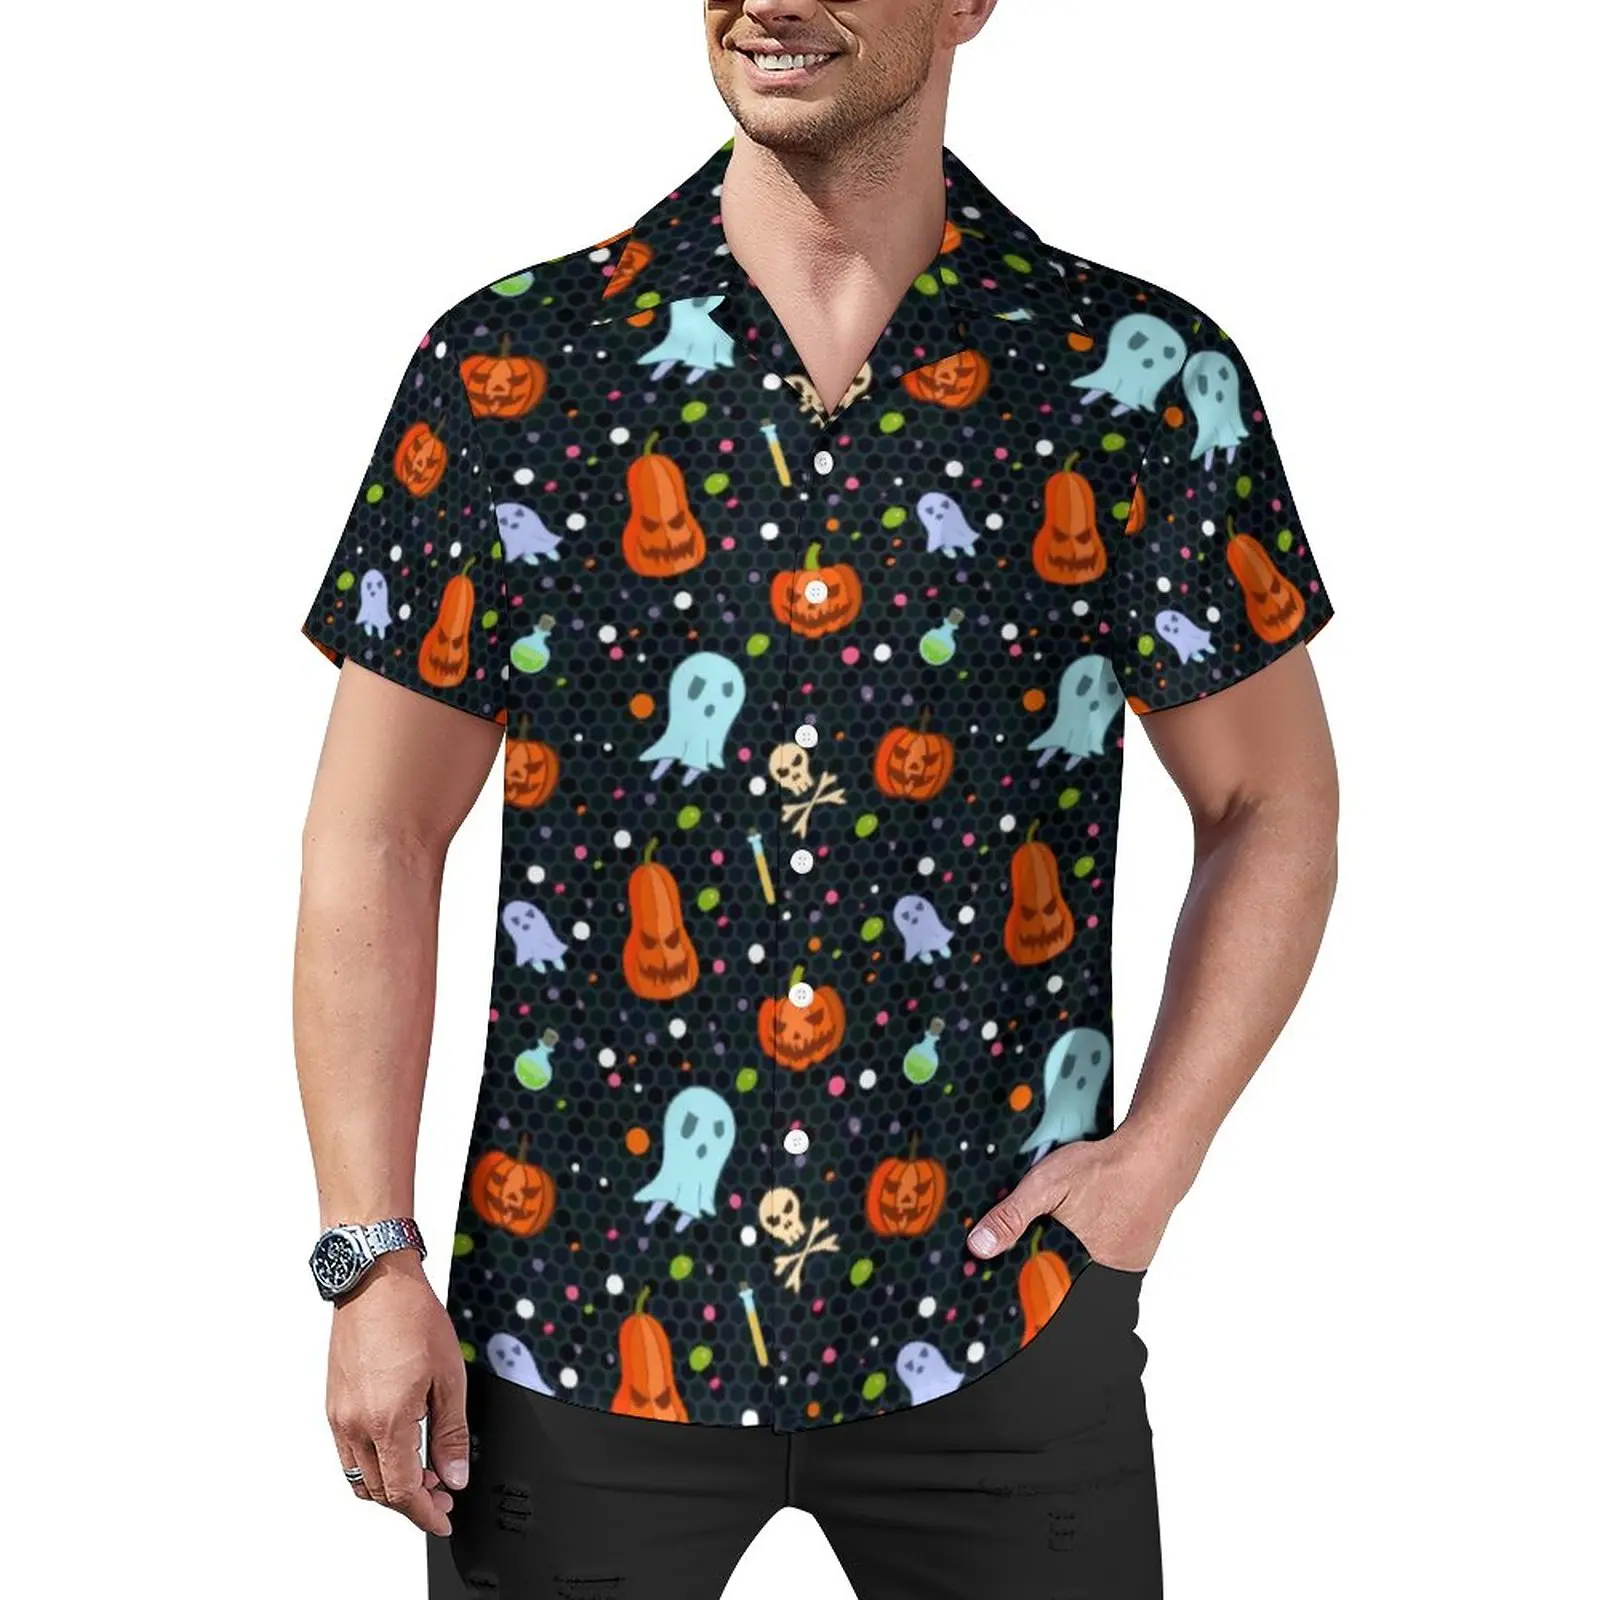 

Пляжная рубашка с принтом на Хэллоуин Гавайские повседневные рубашки с призраками и тыквами мужские уличные блузки дизайнерские топы с кор...